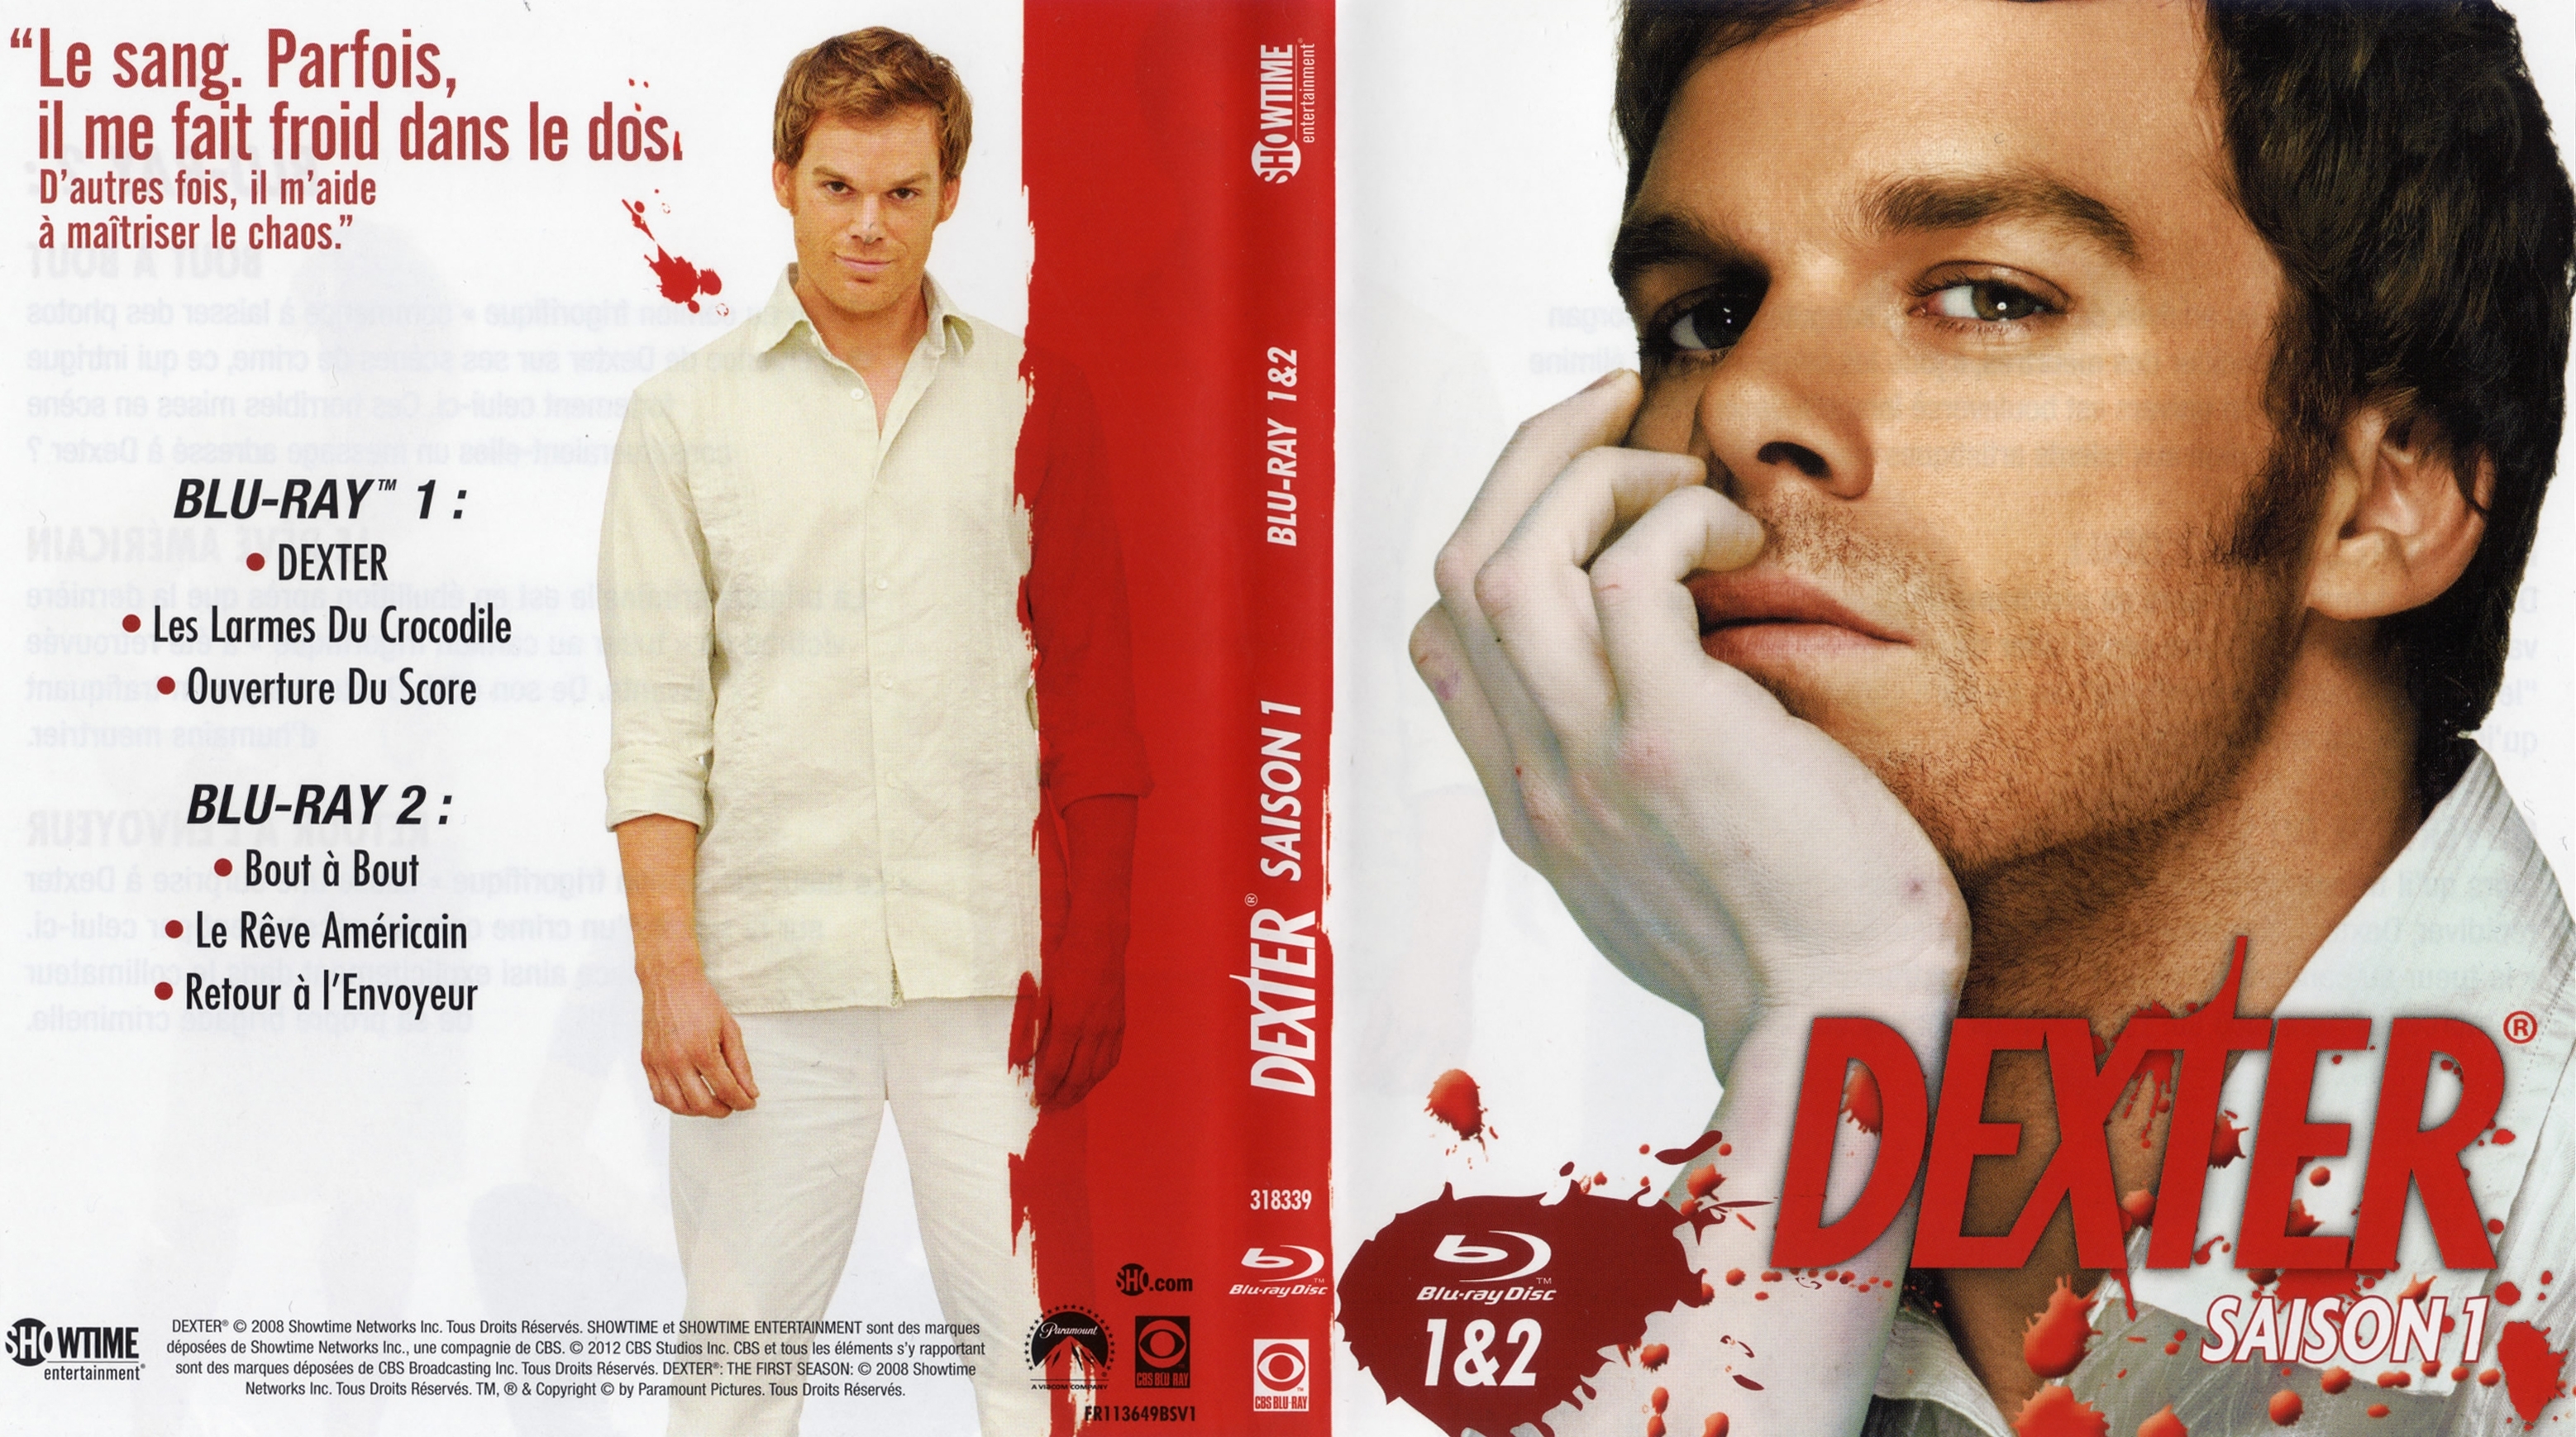 Jaquette DVD Dexter saison 1 DVD 1 (BLU-RAY)